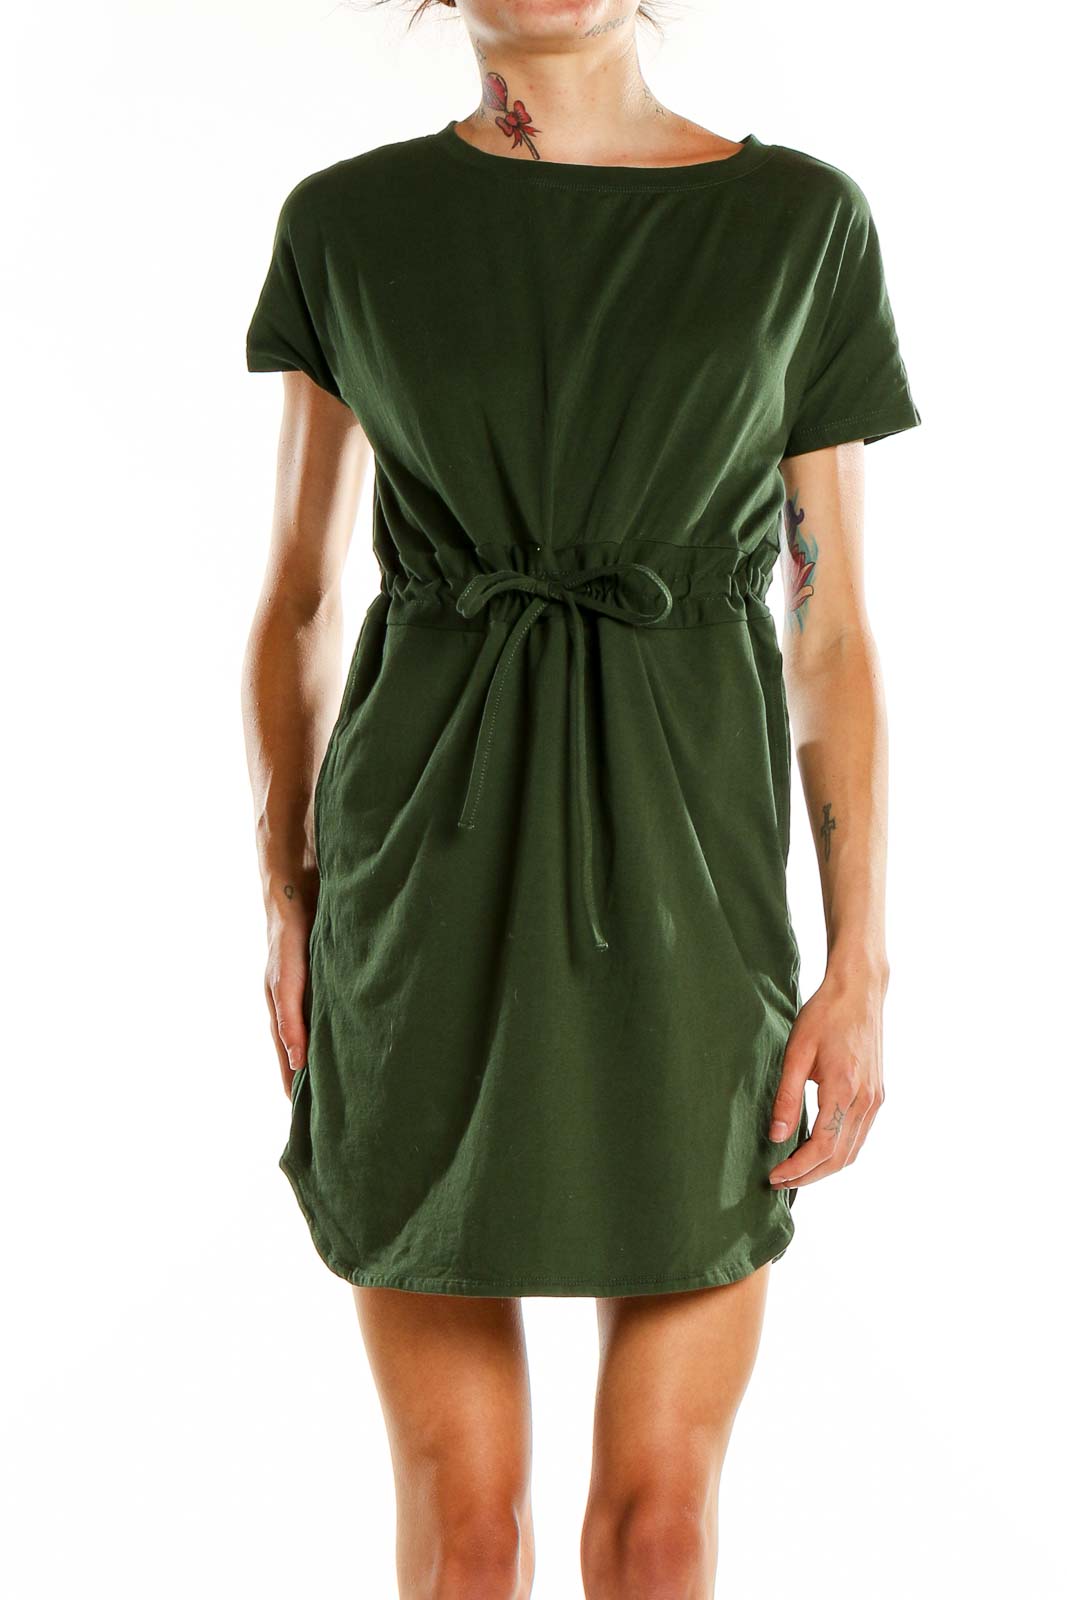 Green Casual Tie Waist Shirt Dress Front